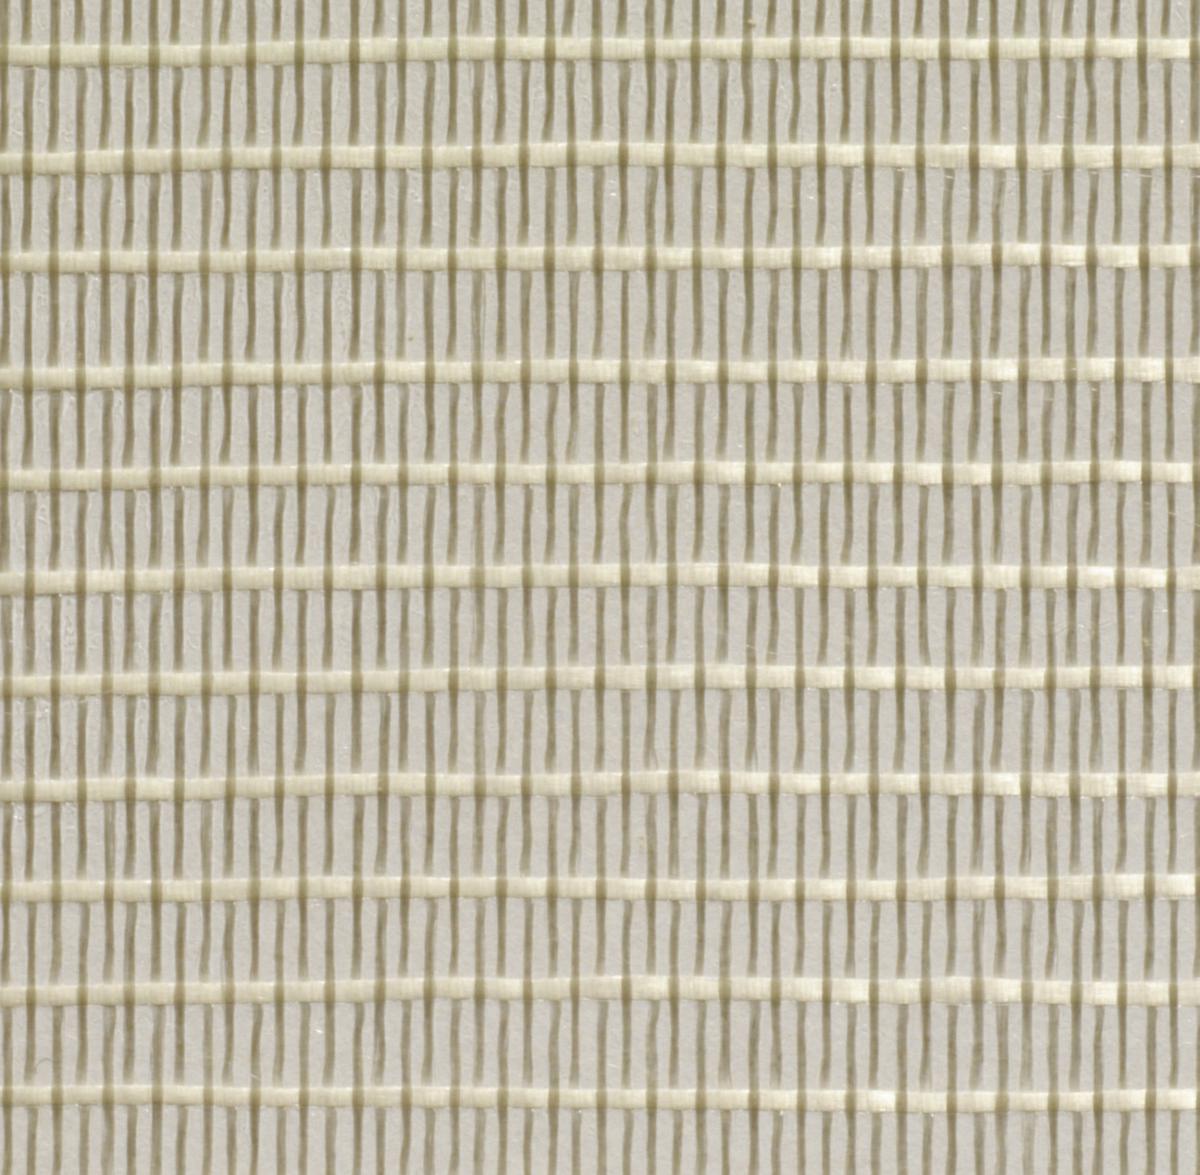 Raja Filamentband längs und quer verstärkt, Länge x Breite 50 m x 25 mm Detail 1 ZOOM